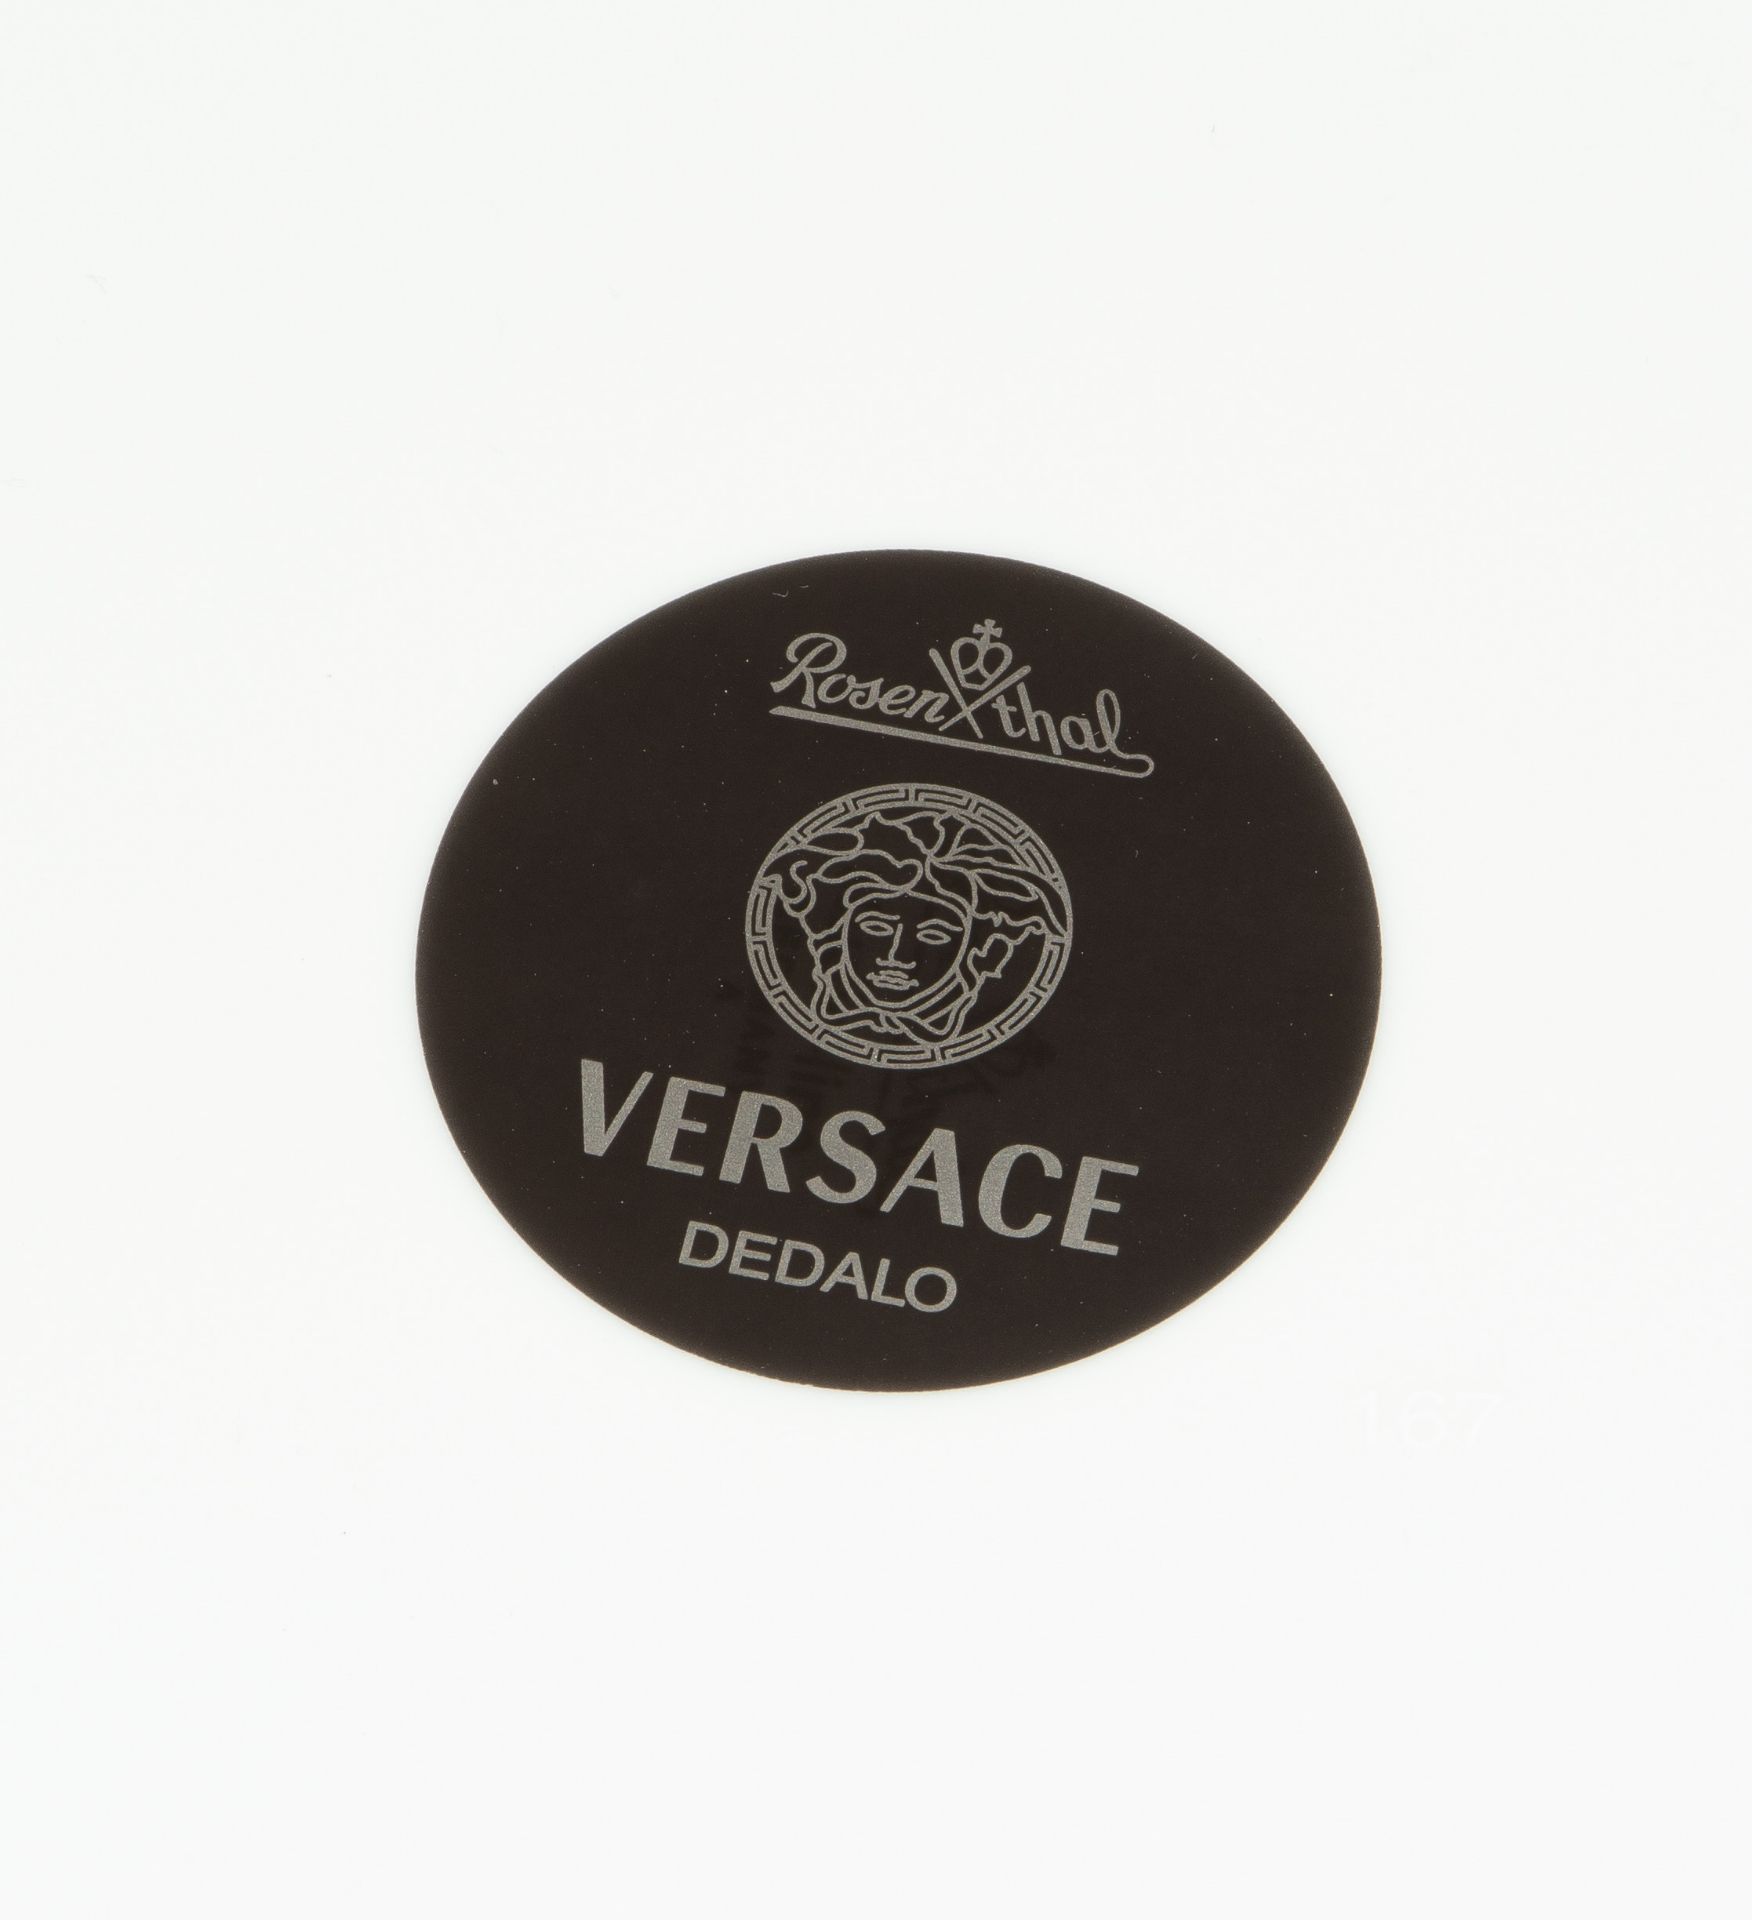 Versace, Tafel- und Kaffeeservice "Dedalo" - Bild 21 aus 27